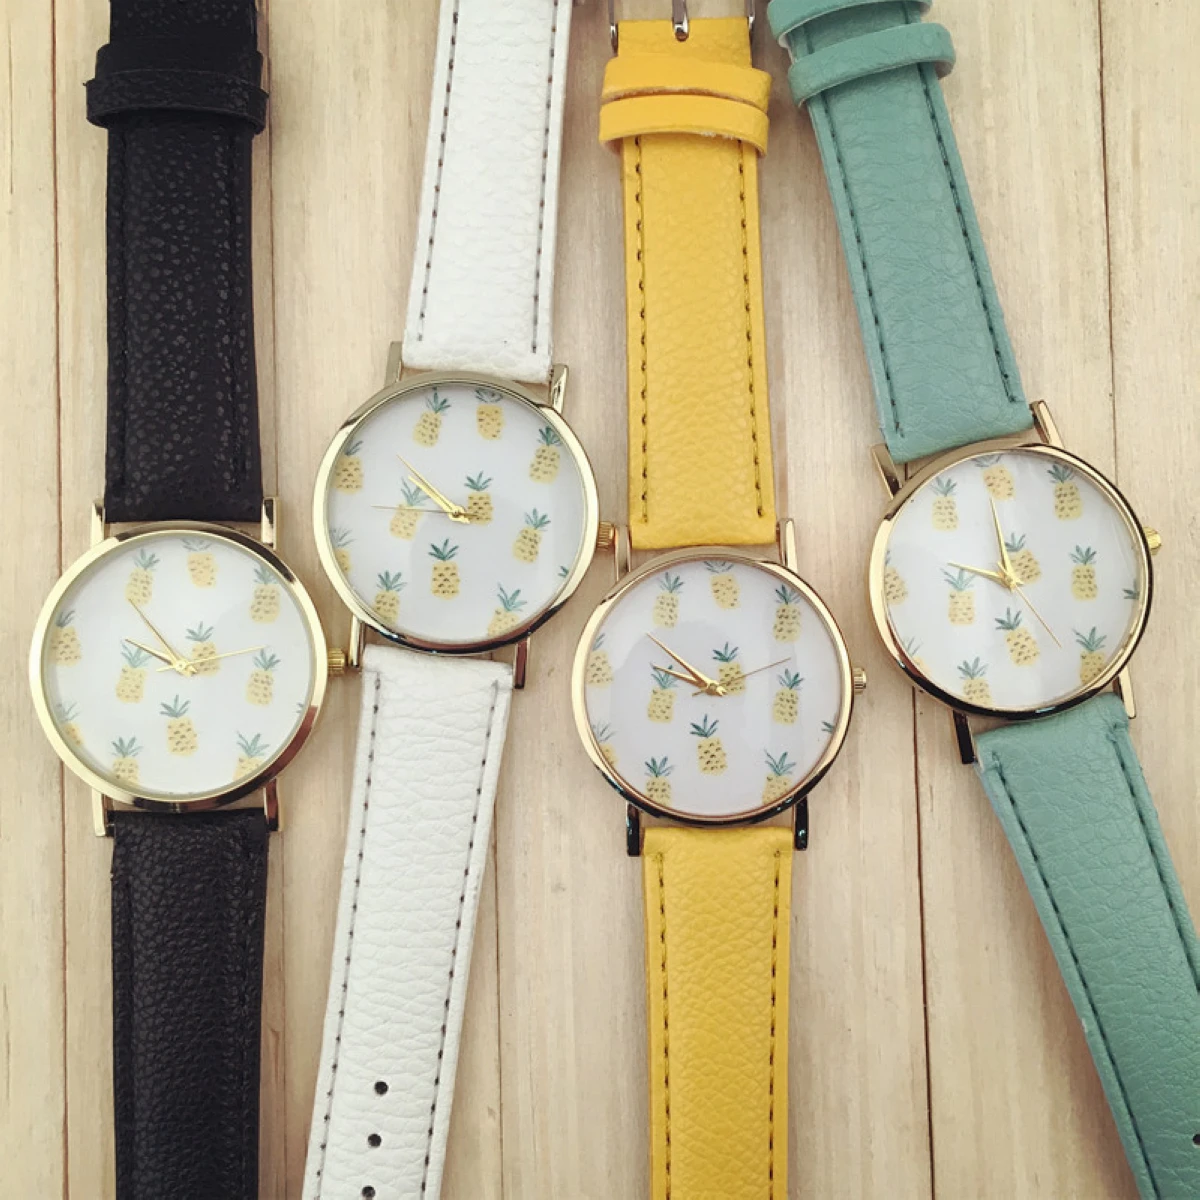 レディースファッションパイナップルパターンレザーバンドアナログクォーツ腕時計